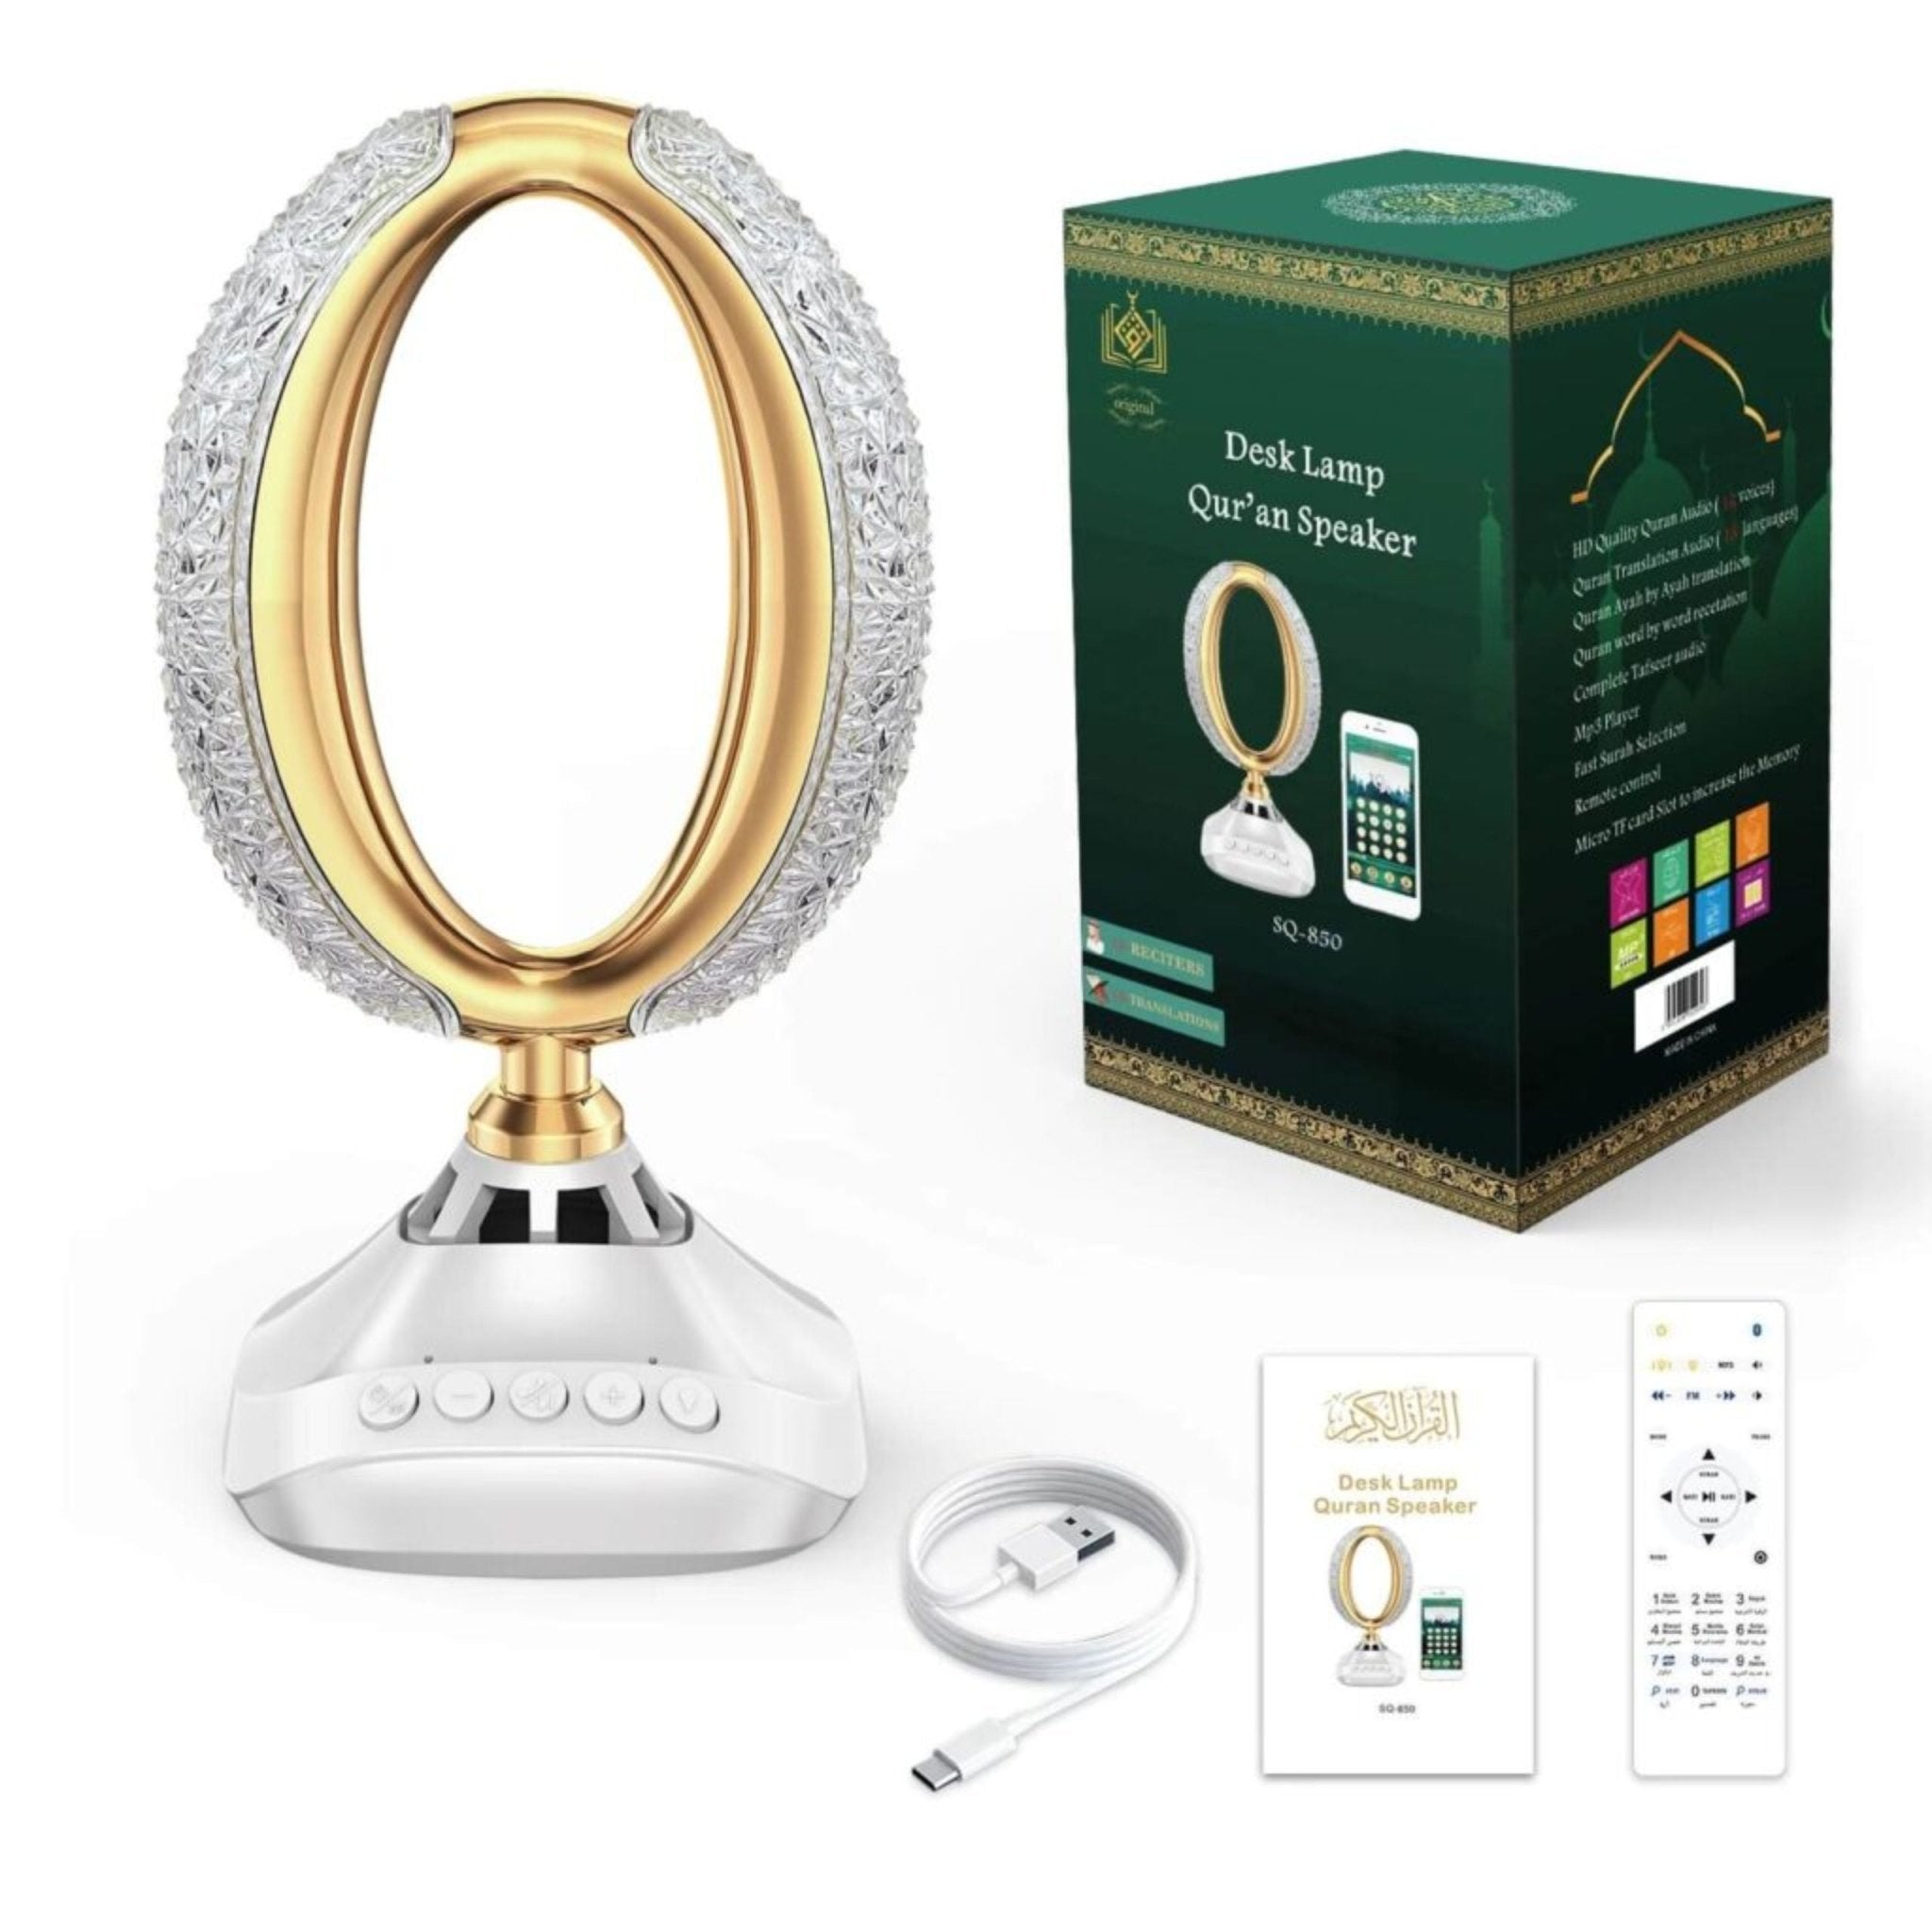 Desk Lamp Quran Speaker SQ-850 - White